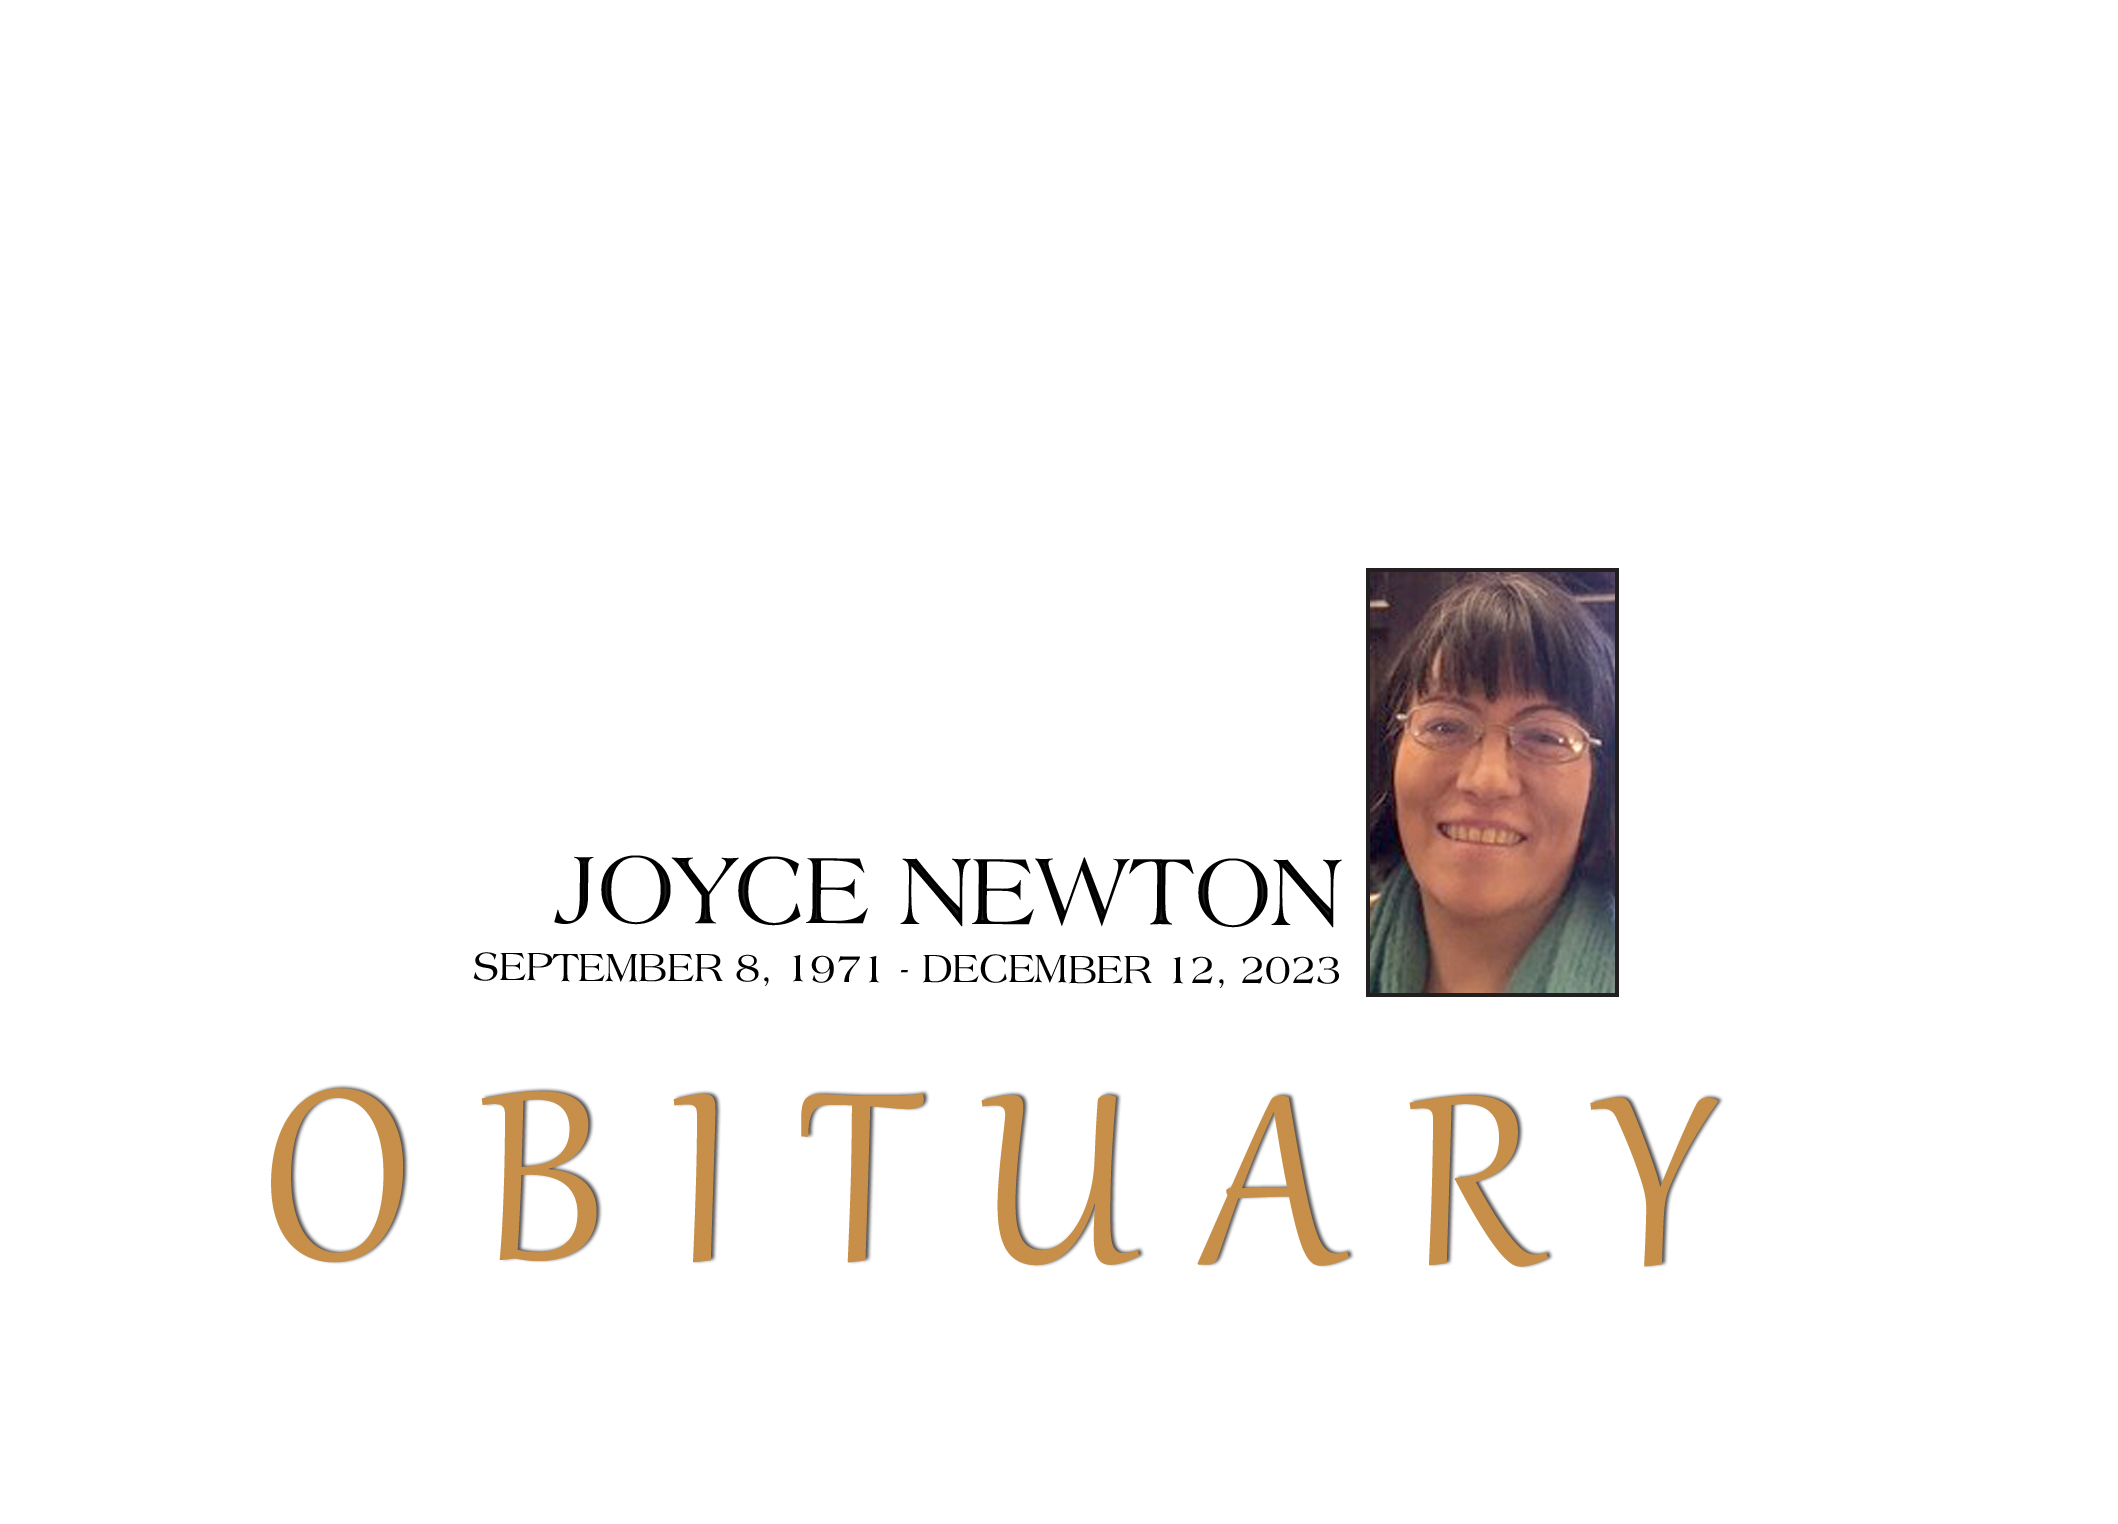 OBITUARY: Joyce Newton